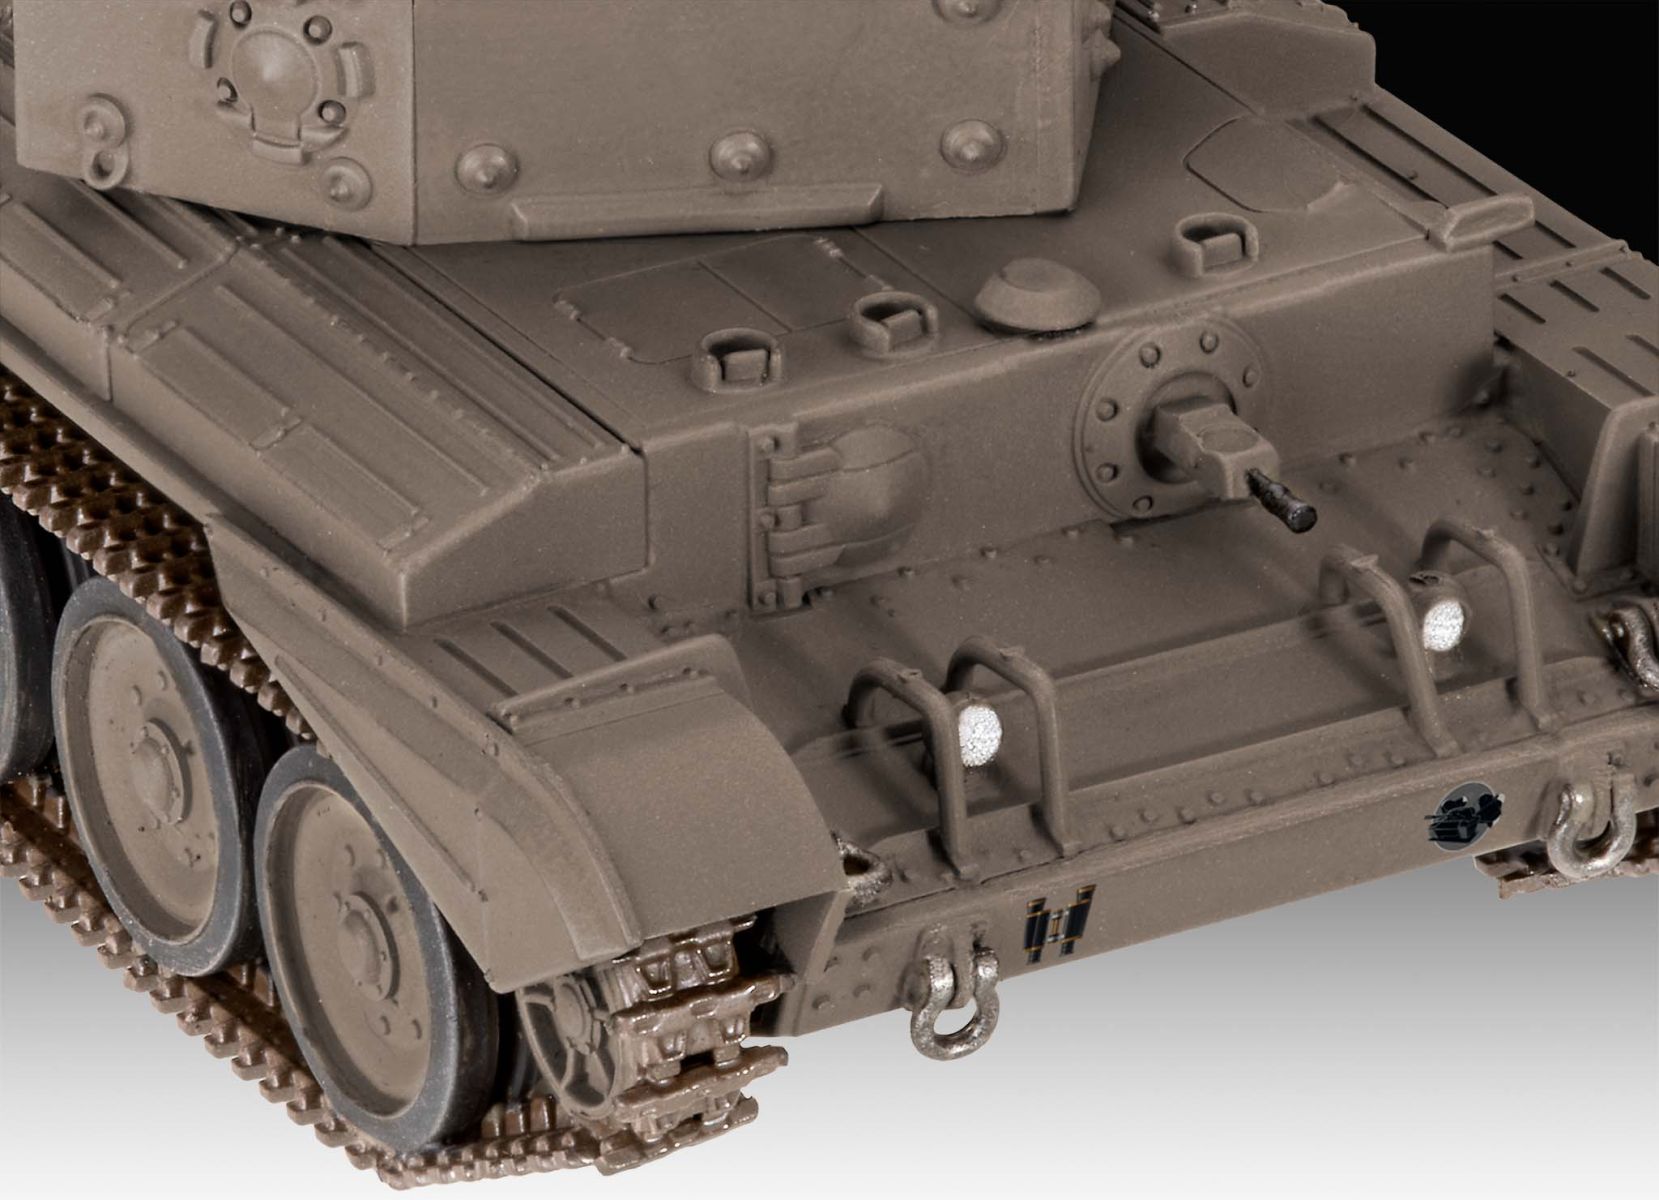 Revell 03504 - Cromwell Mk. IV "World of Tanks"